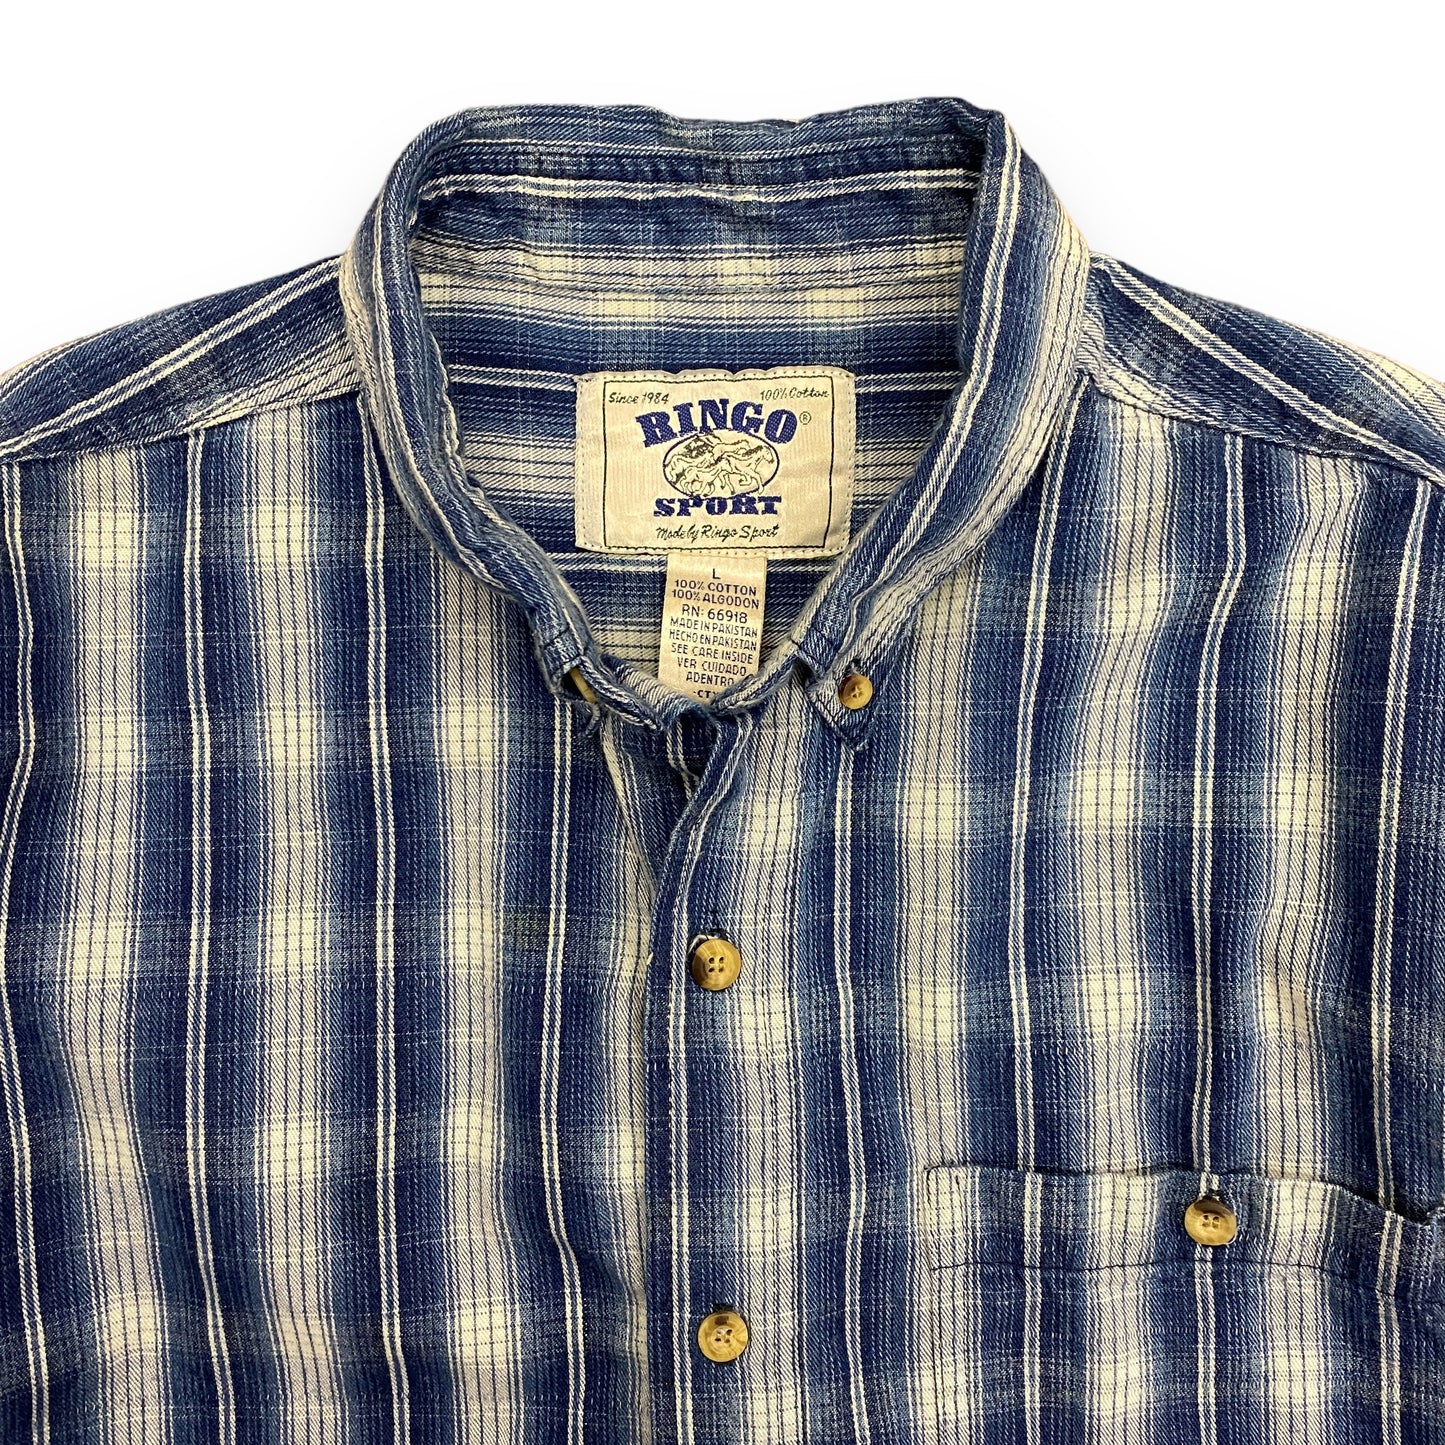 Vintage Ringo Sport Blue Plaid Cotton Button Down Shirt - Size Large